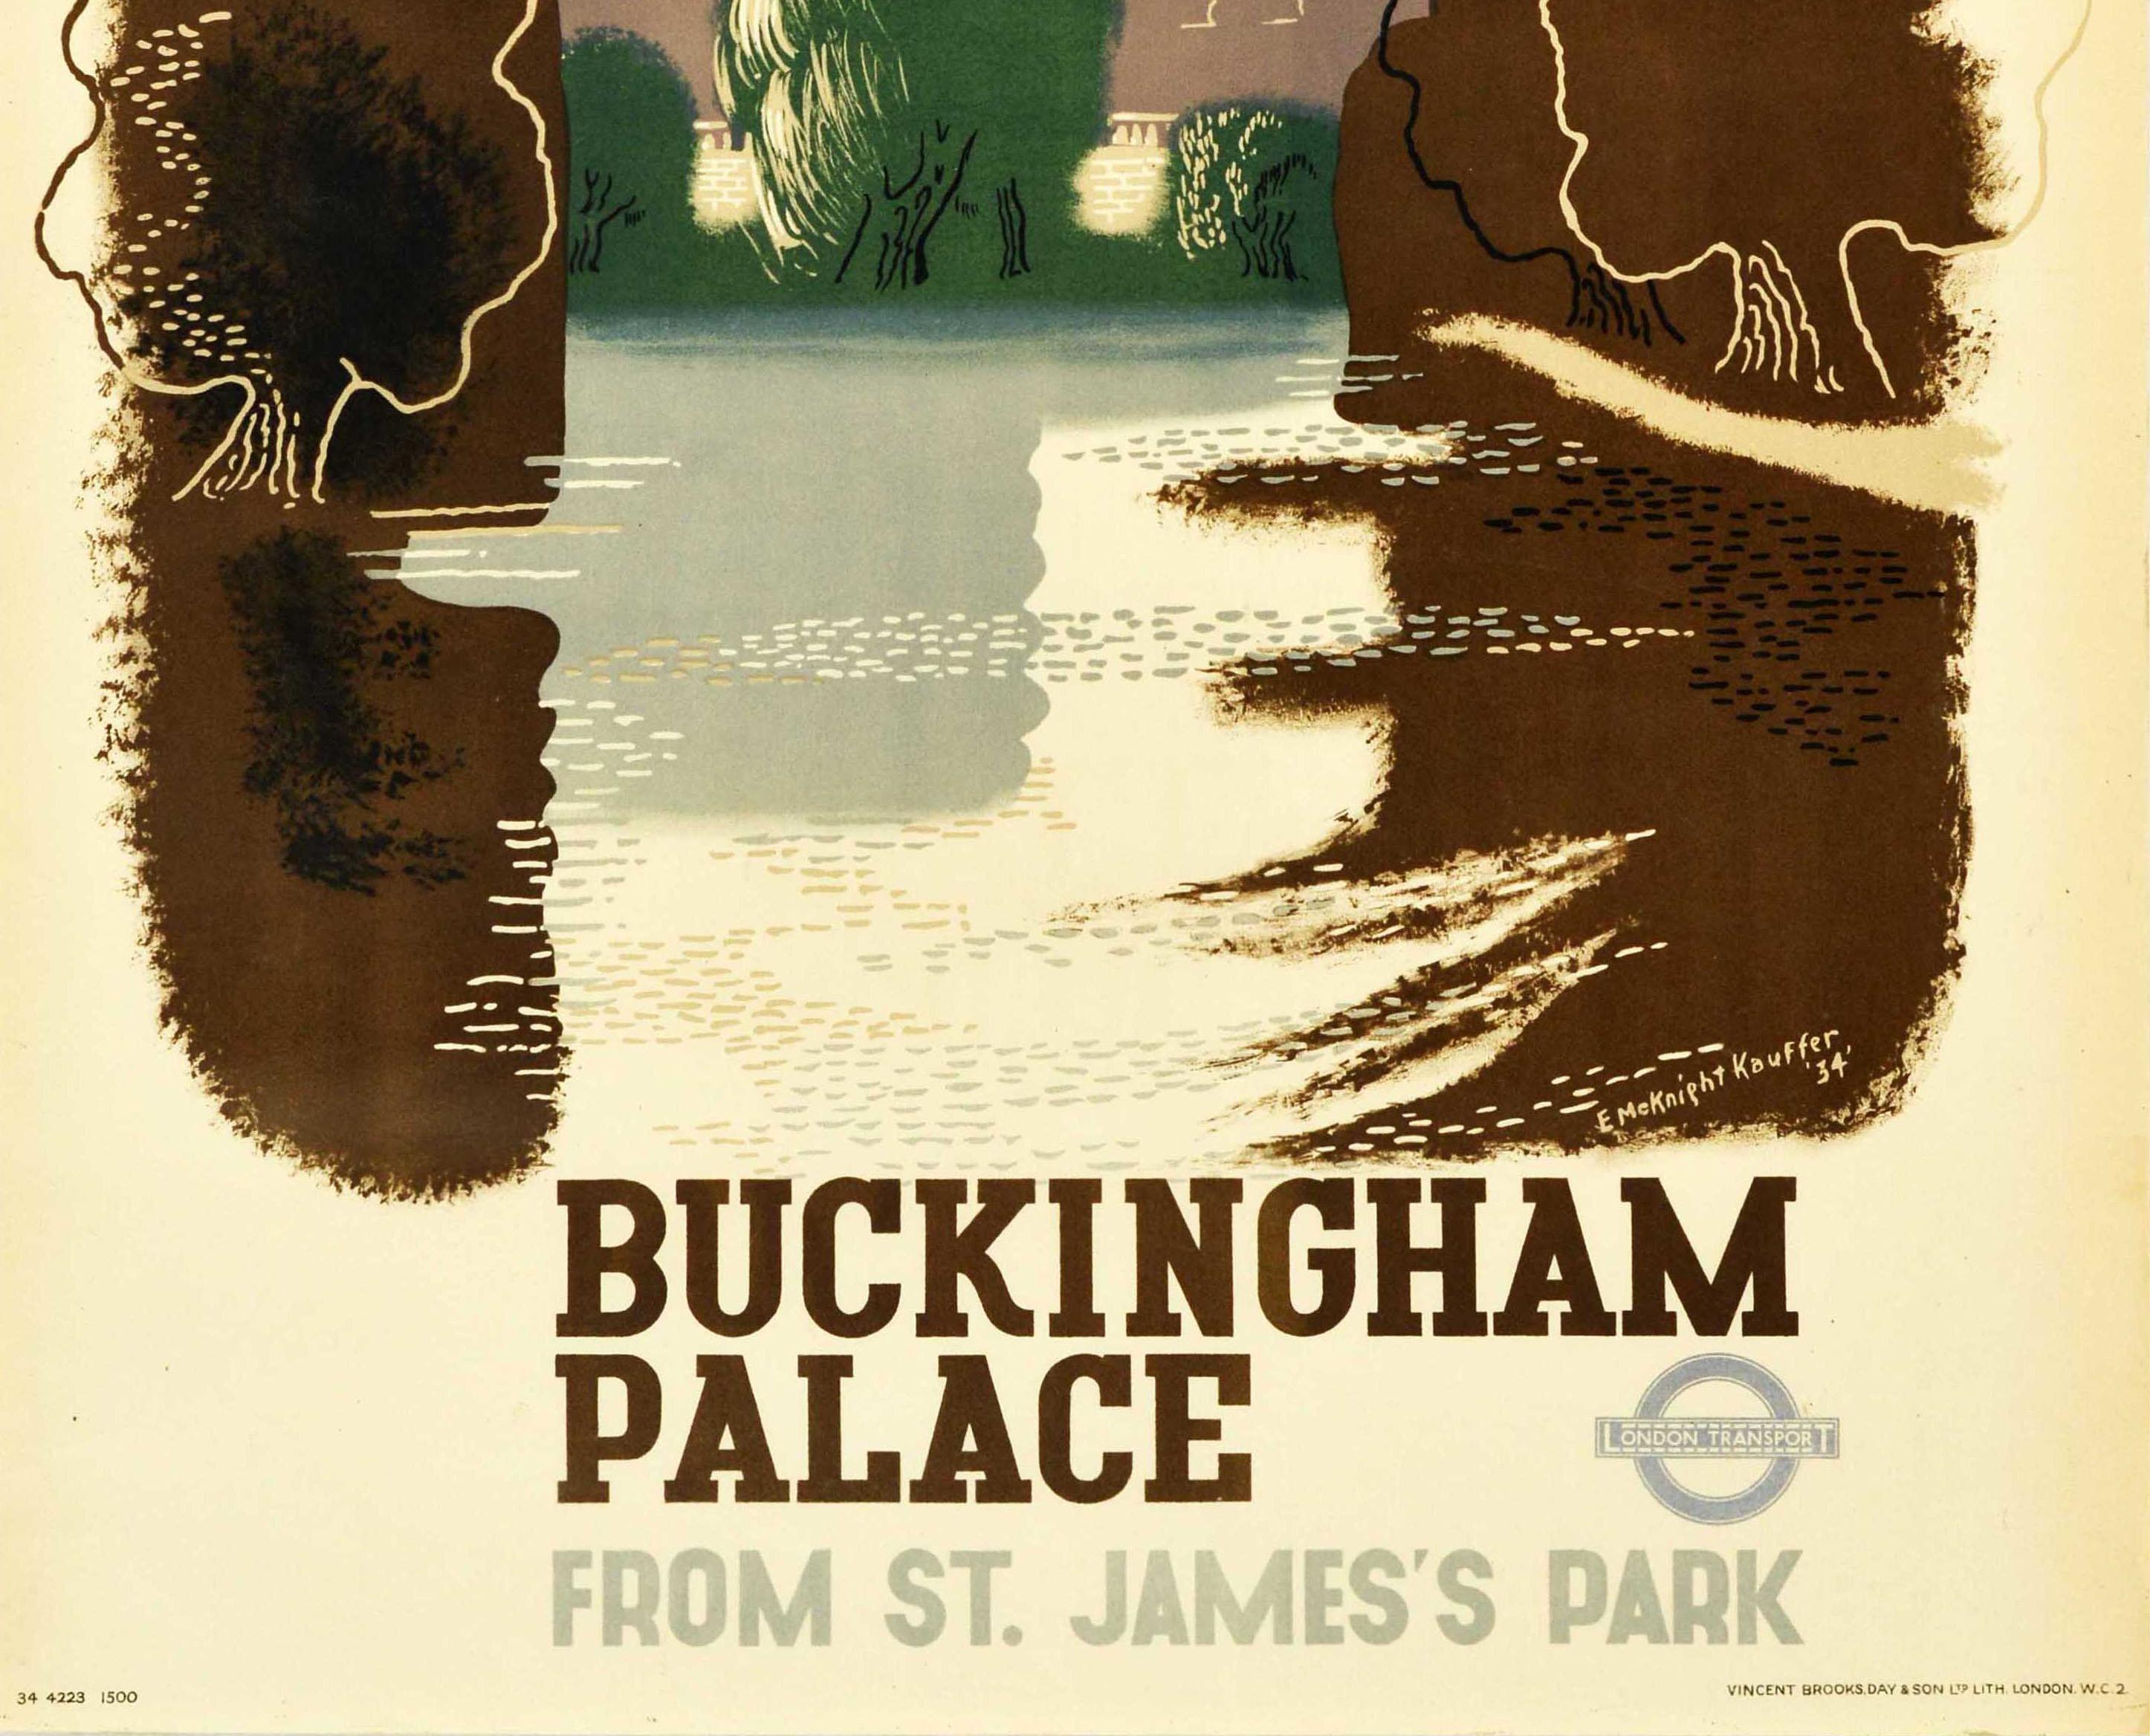 Original Londoner Verkehrsplakat, entworfen von einem der bekanntesten Plakatkünstler des 20. Jahrhunderts, Edward McKnight Kauffer (1890-1954), mit einer malerischen Ansicht des Buckingham Palace vom St. James's Park aus, mit den Bäumen, die sich